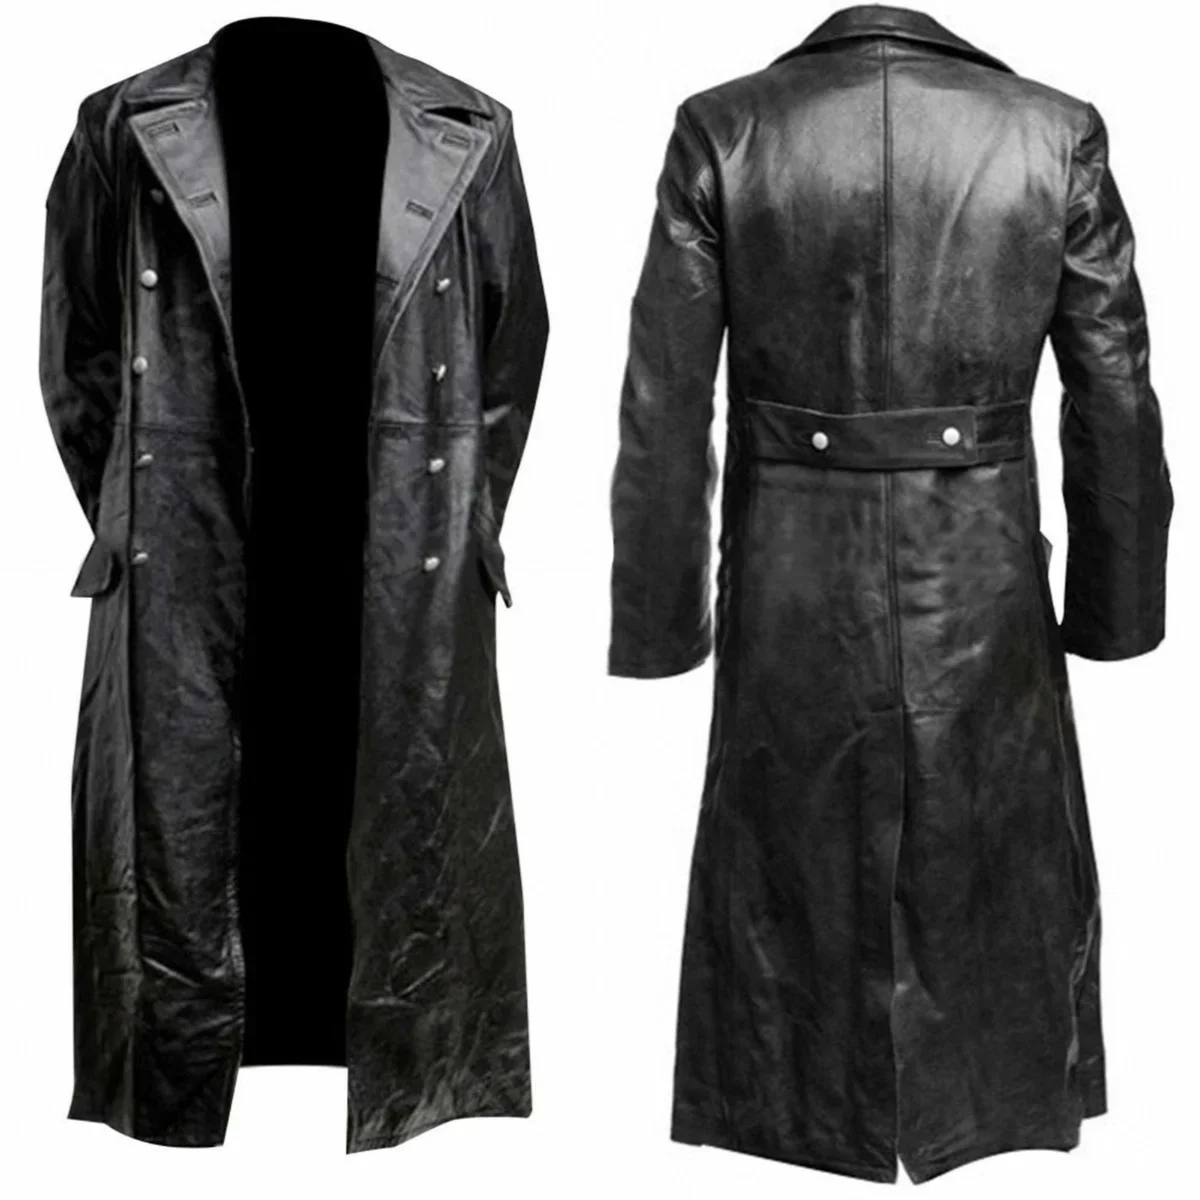 

Мужская немецкая Классическая Военная Униформа времен Второй мировой войны, черный кожаный тренчкот, кожаные куртки